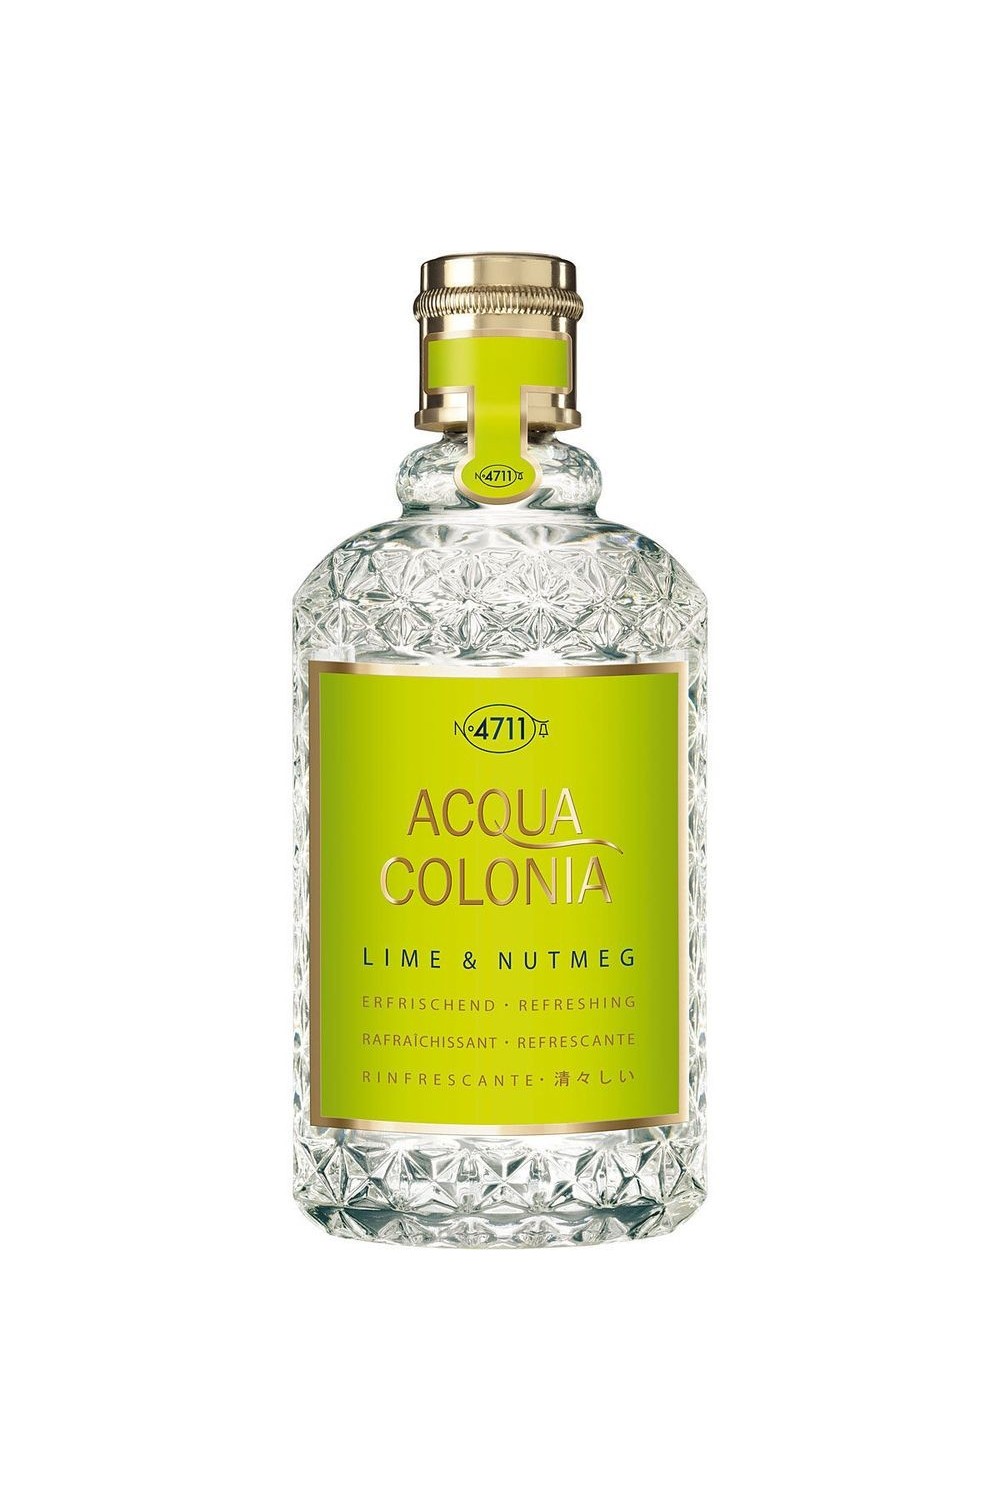 4711 Acqua Colonia Lime And Nutmeg Eau De Cologne Spray 170ml